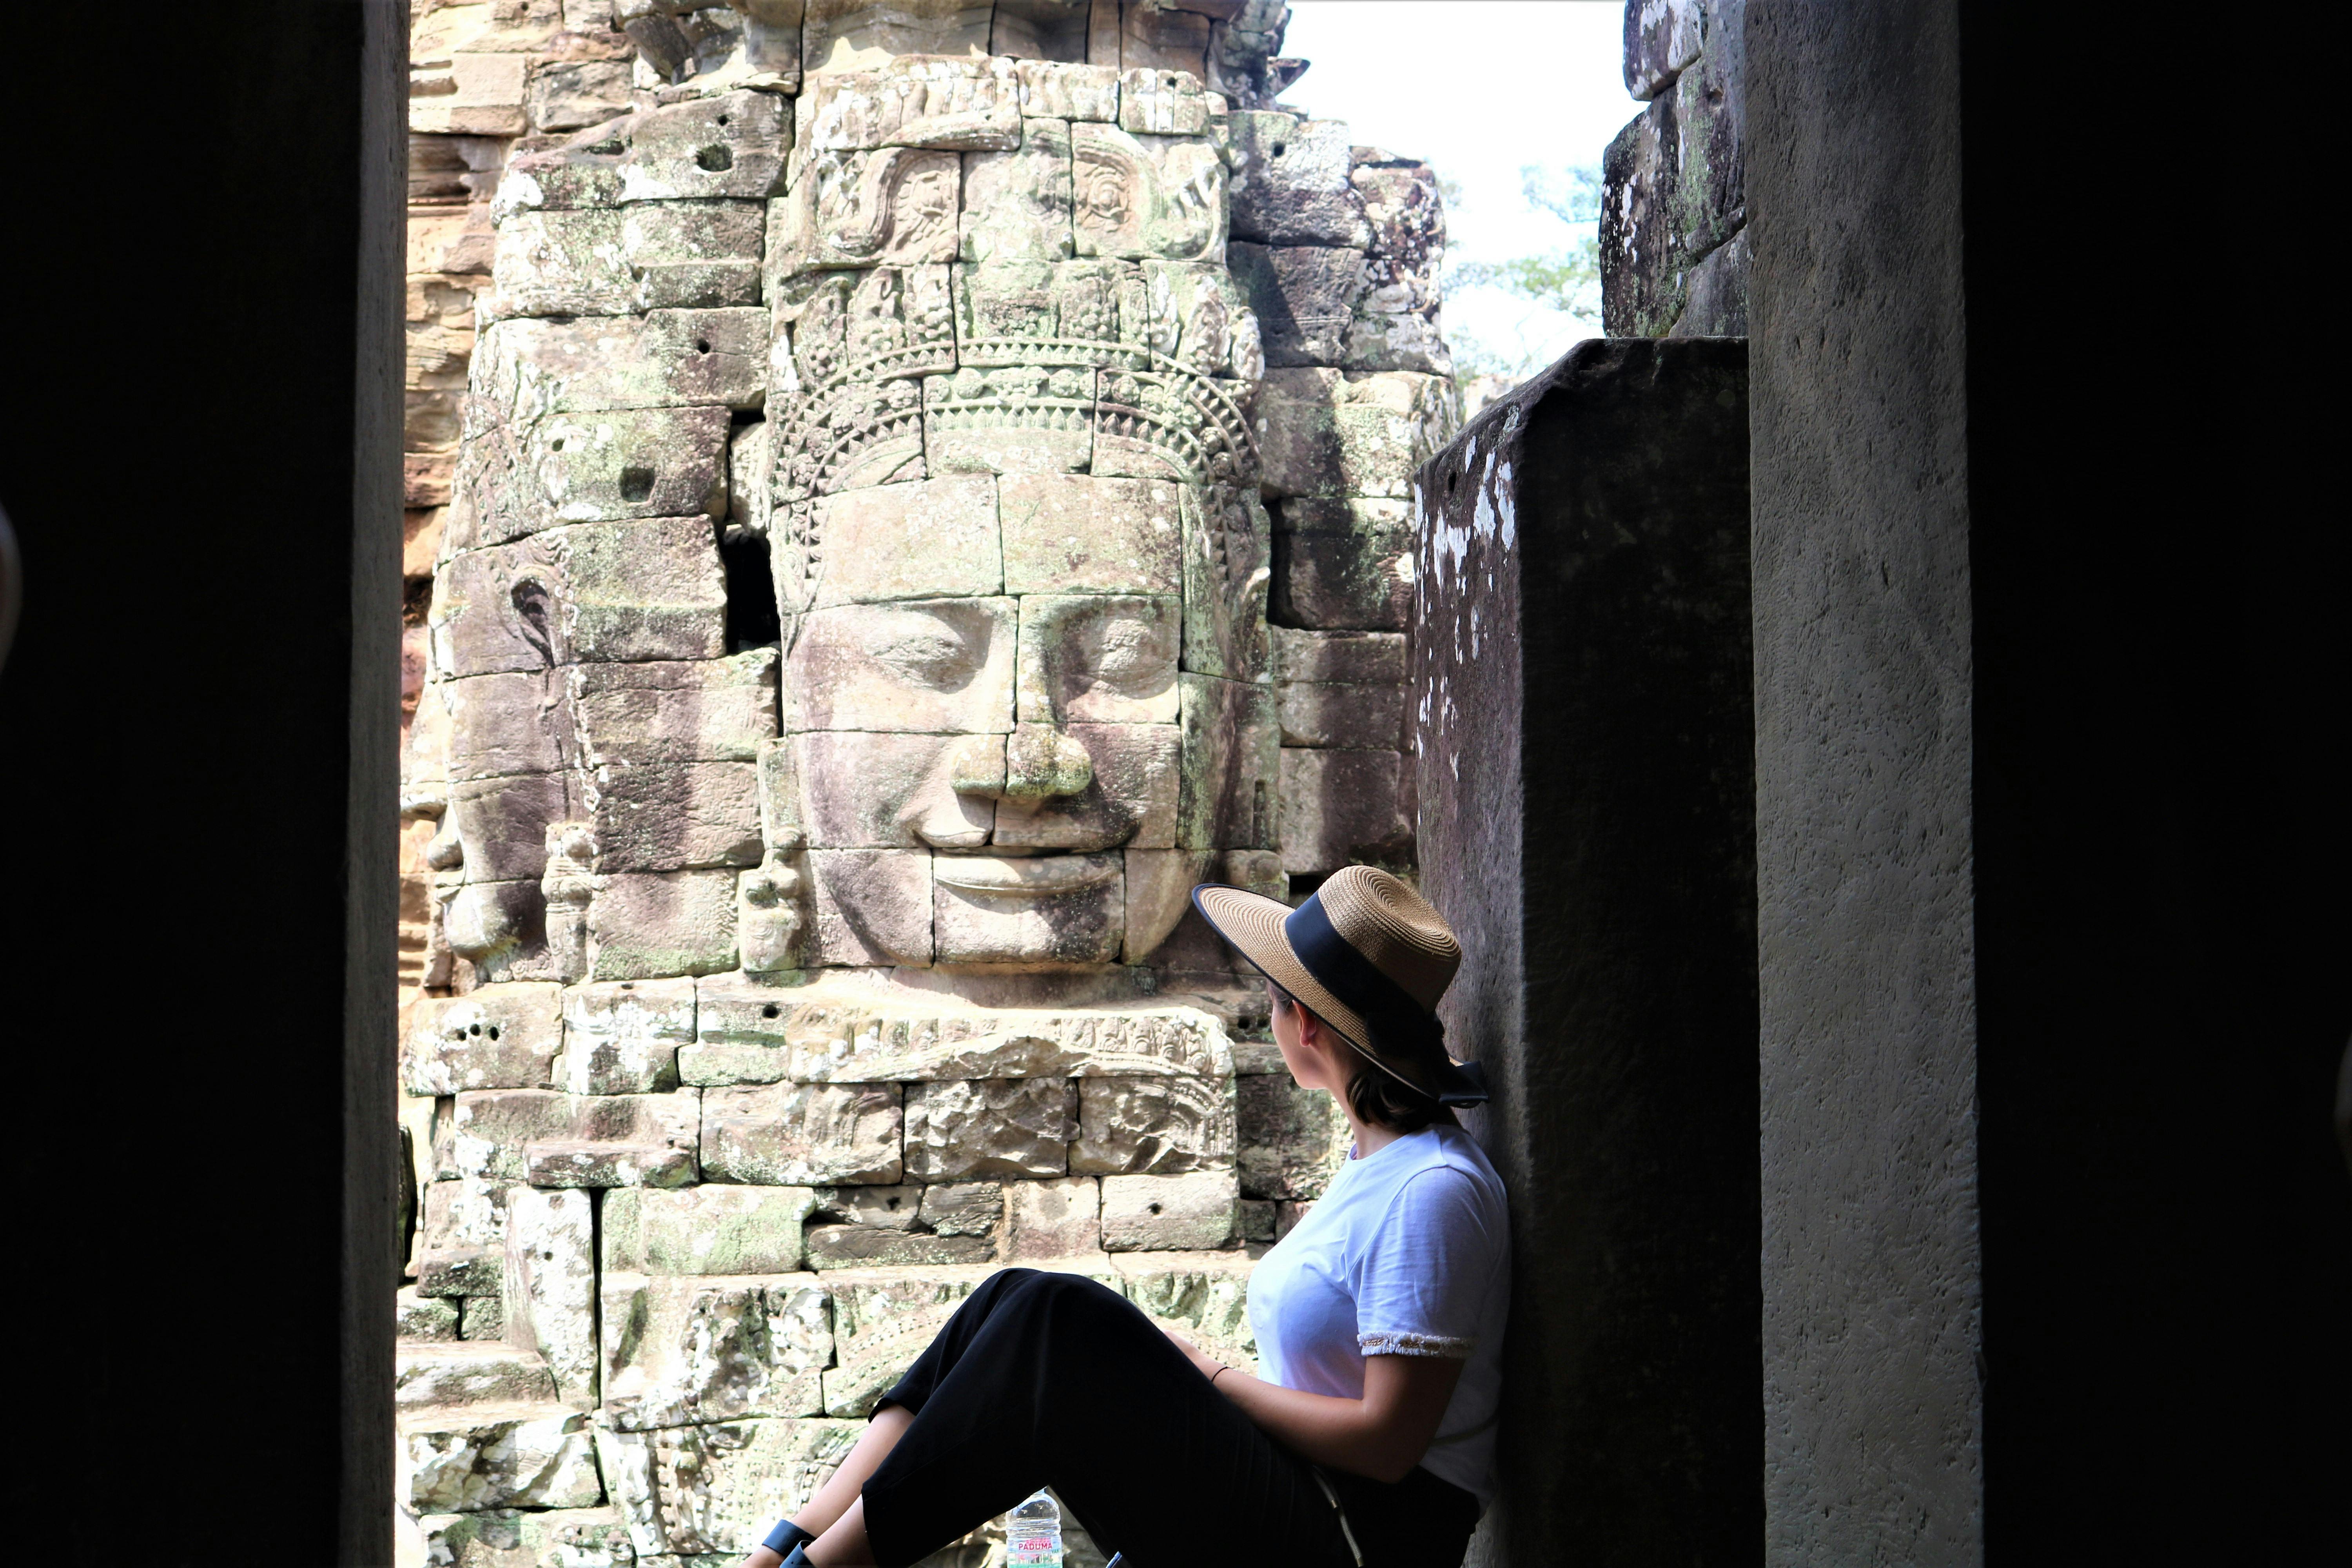 Dwudniowa wycieczka do świątyń Angkor obejmuje wycieczkę w małych grupach